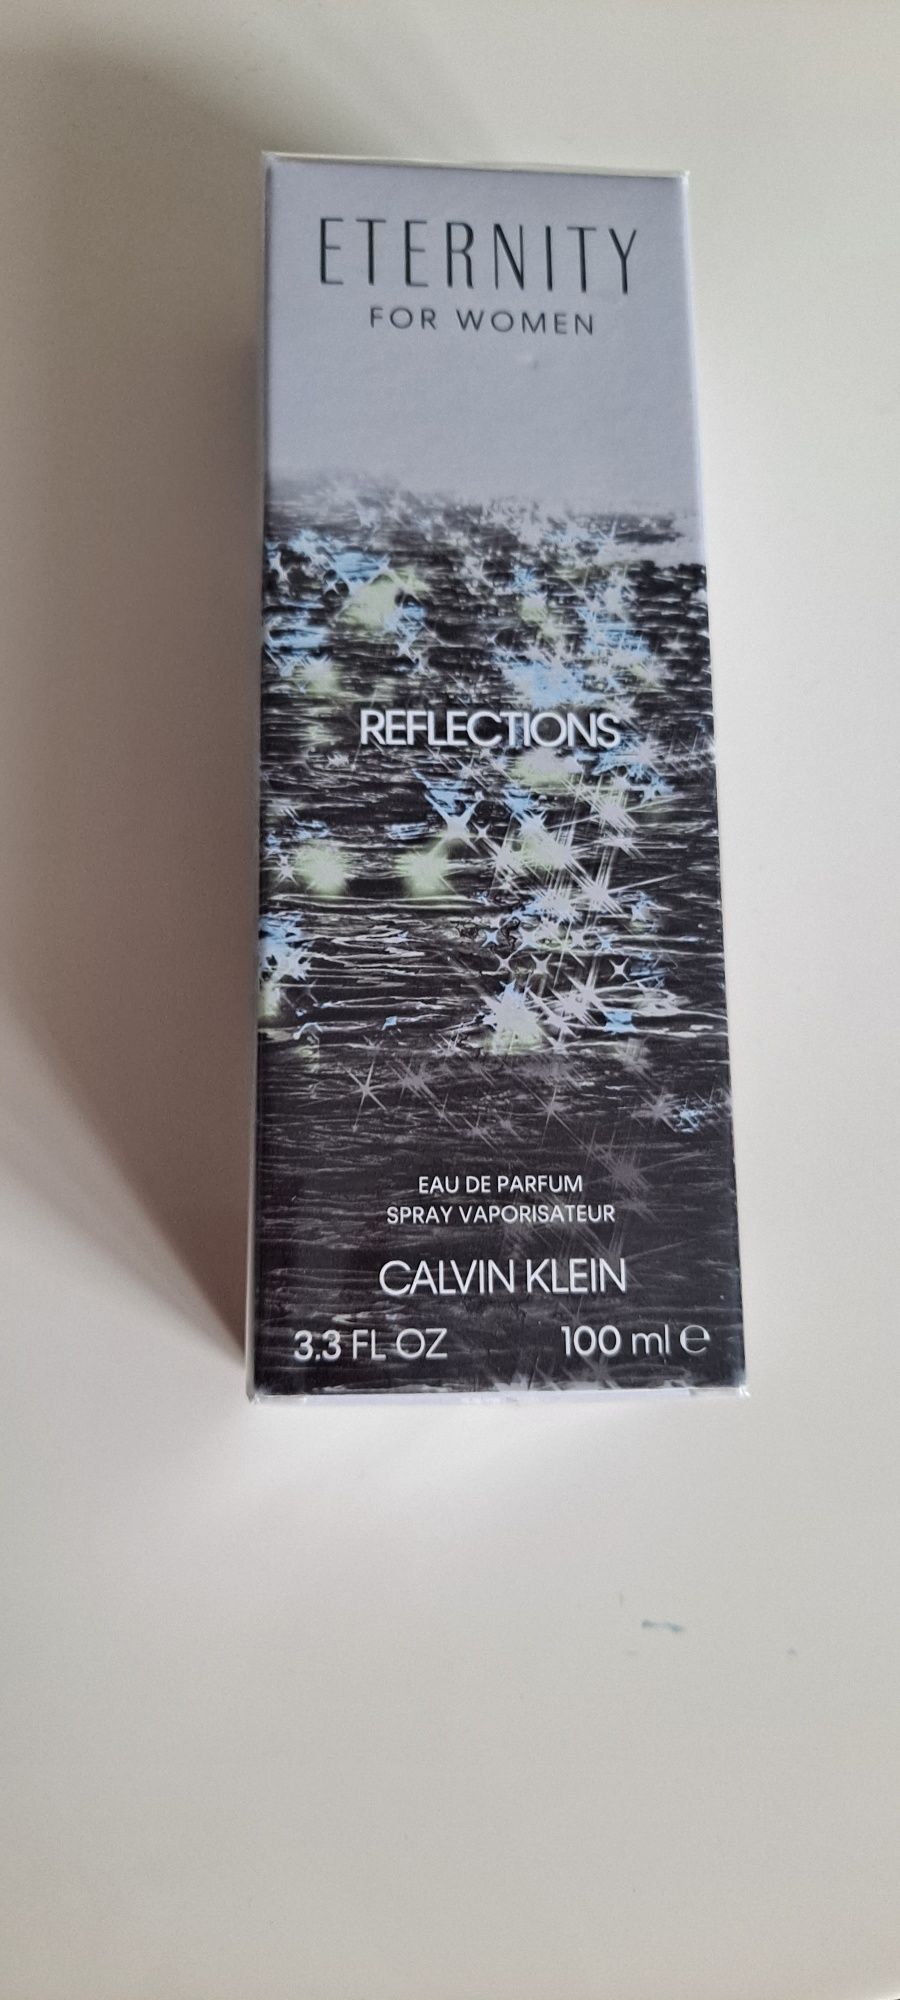 Nowy perfum calvin klein